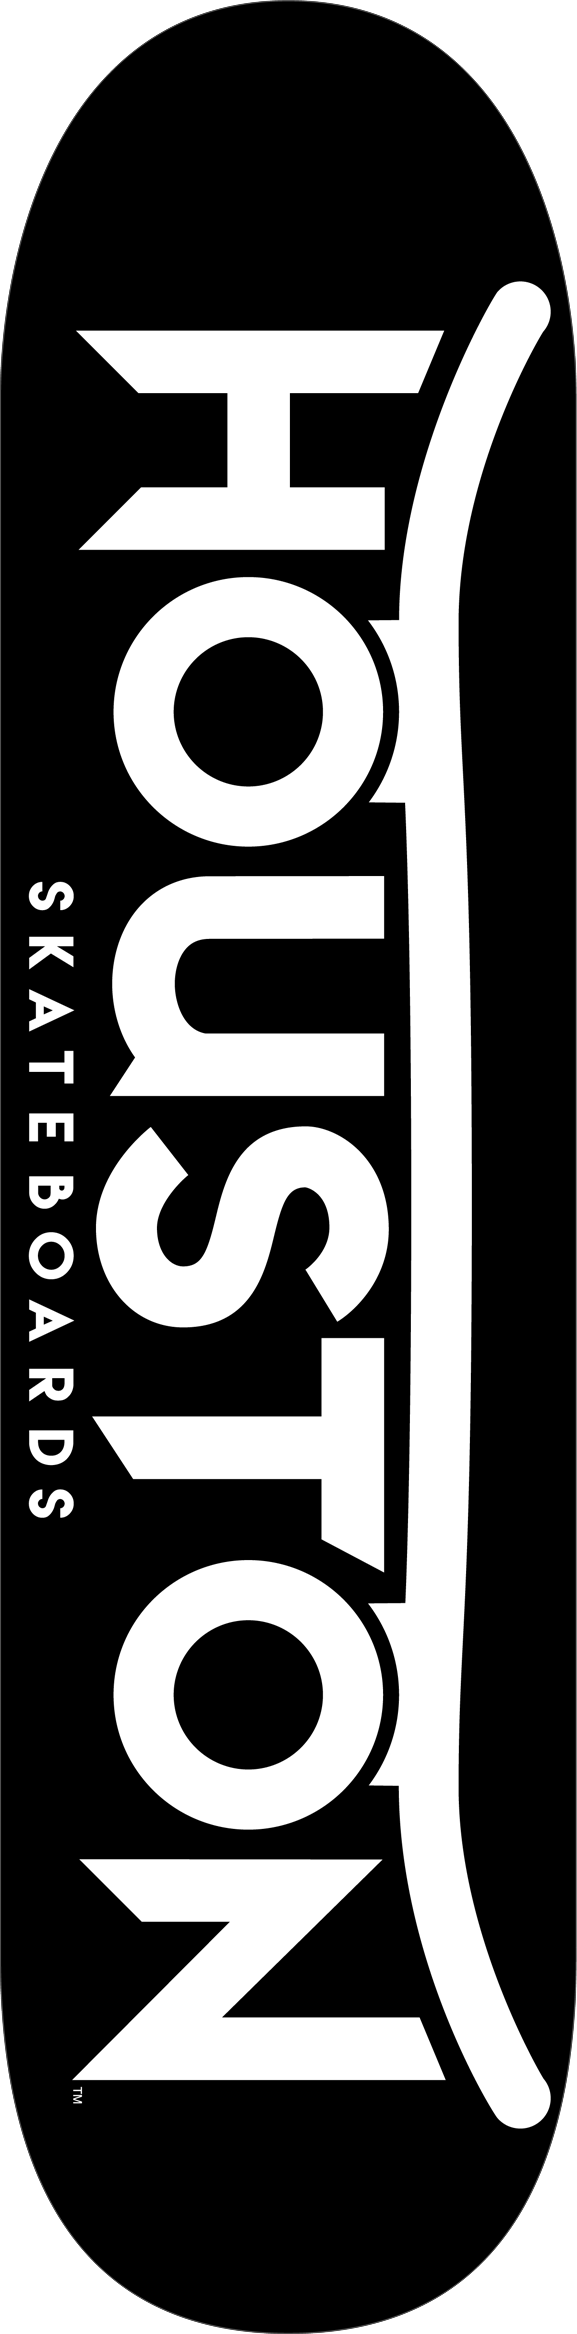 Houston Skateboards – logo deck